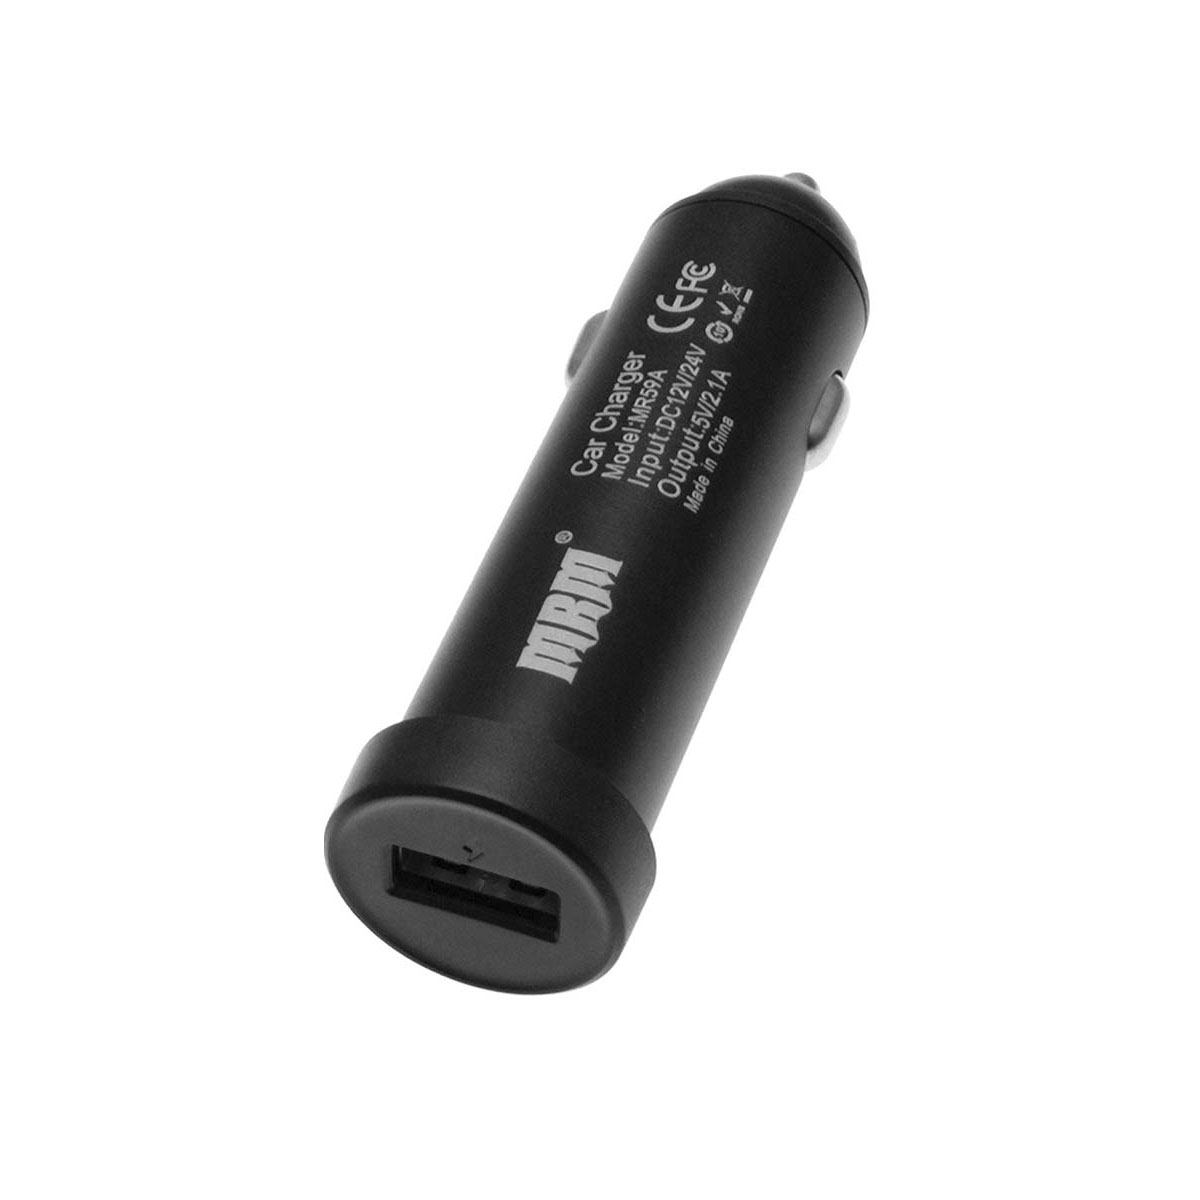 АЗУ (Автомобильное зарядное устройство) MRM MR59A, 2.1A, 1 USB, в блистере, цвет черный